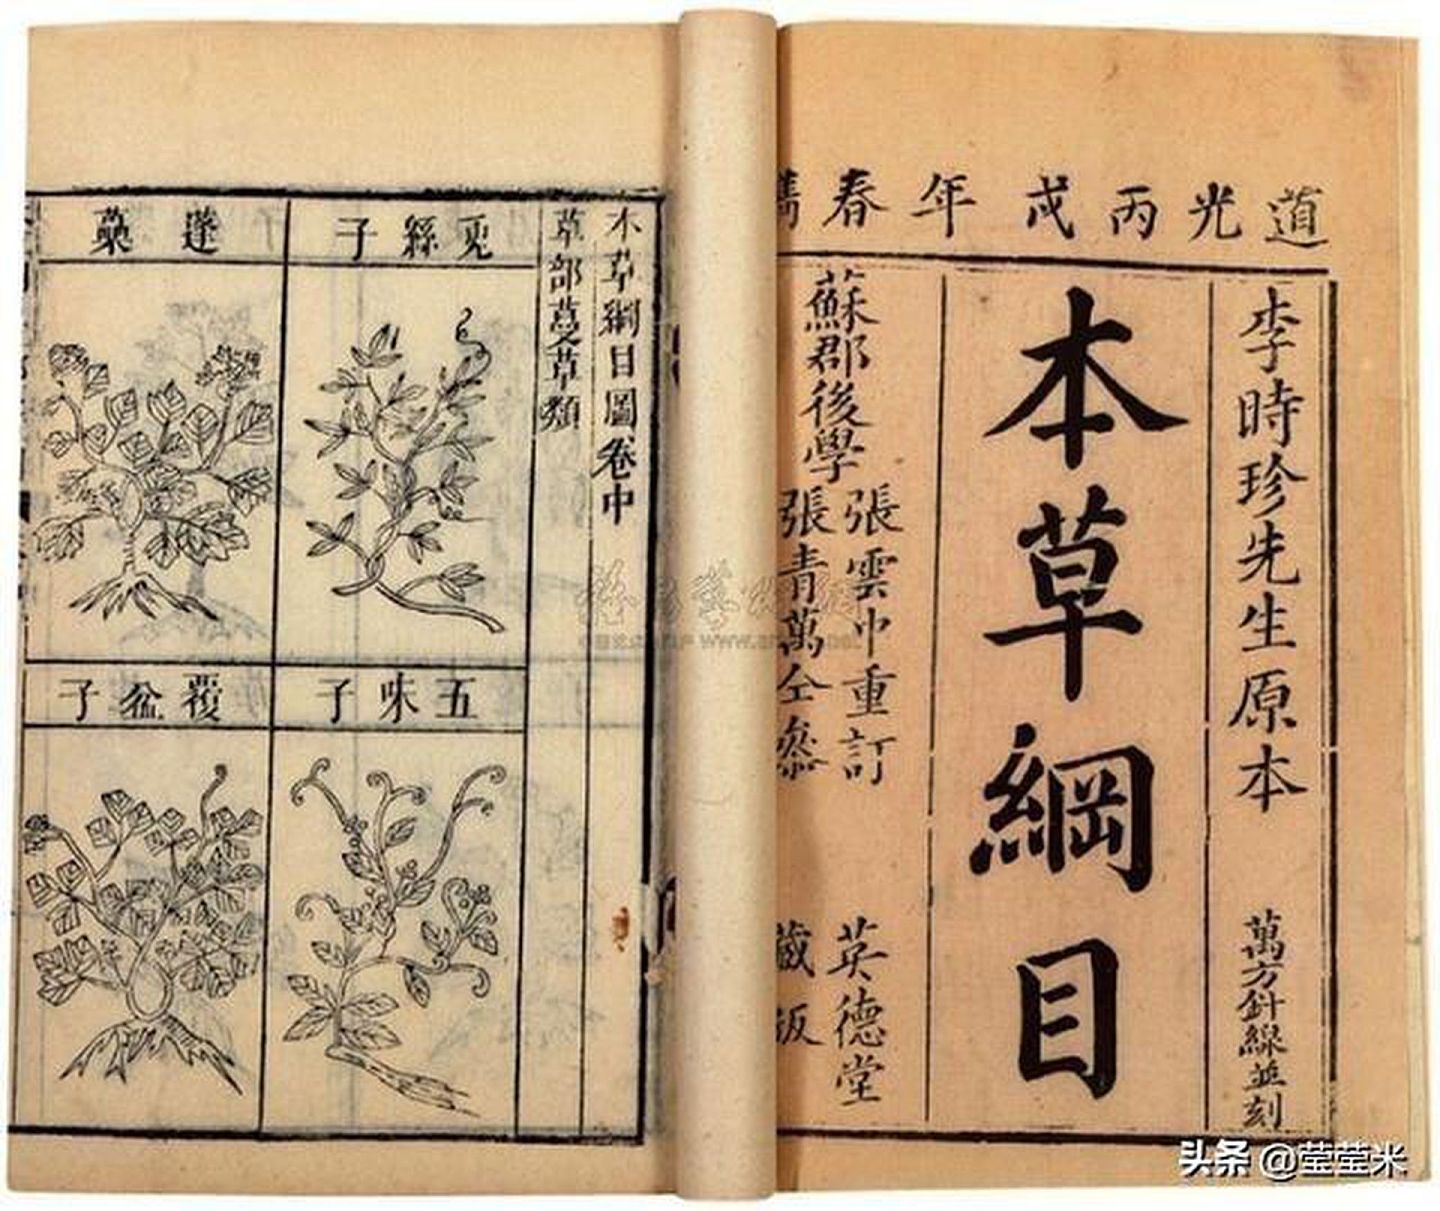 中国古代四大名医之一李时珍也在《本草纲目》中阐述：“灸之则透诸经而治百种病邪。”